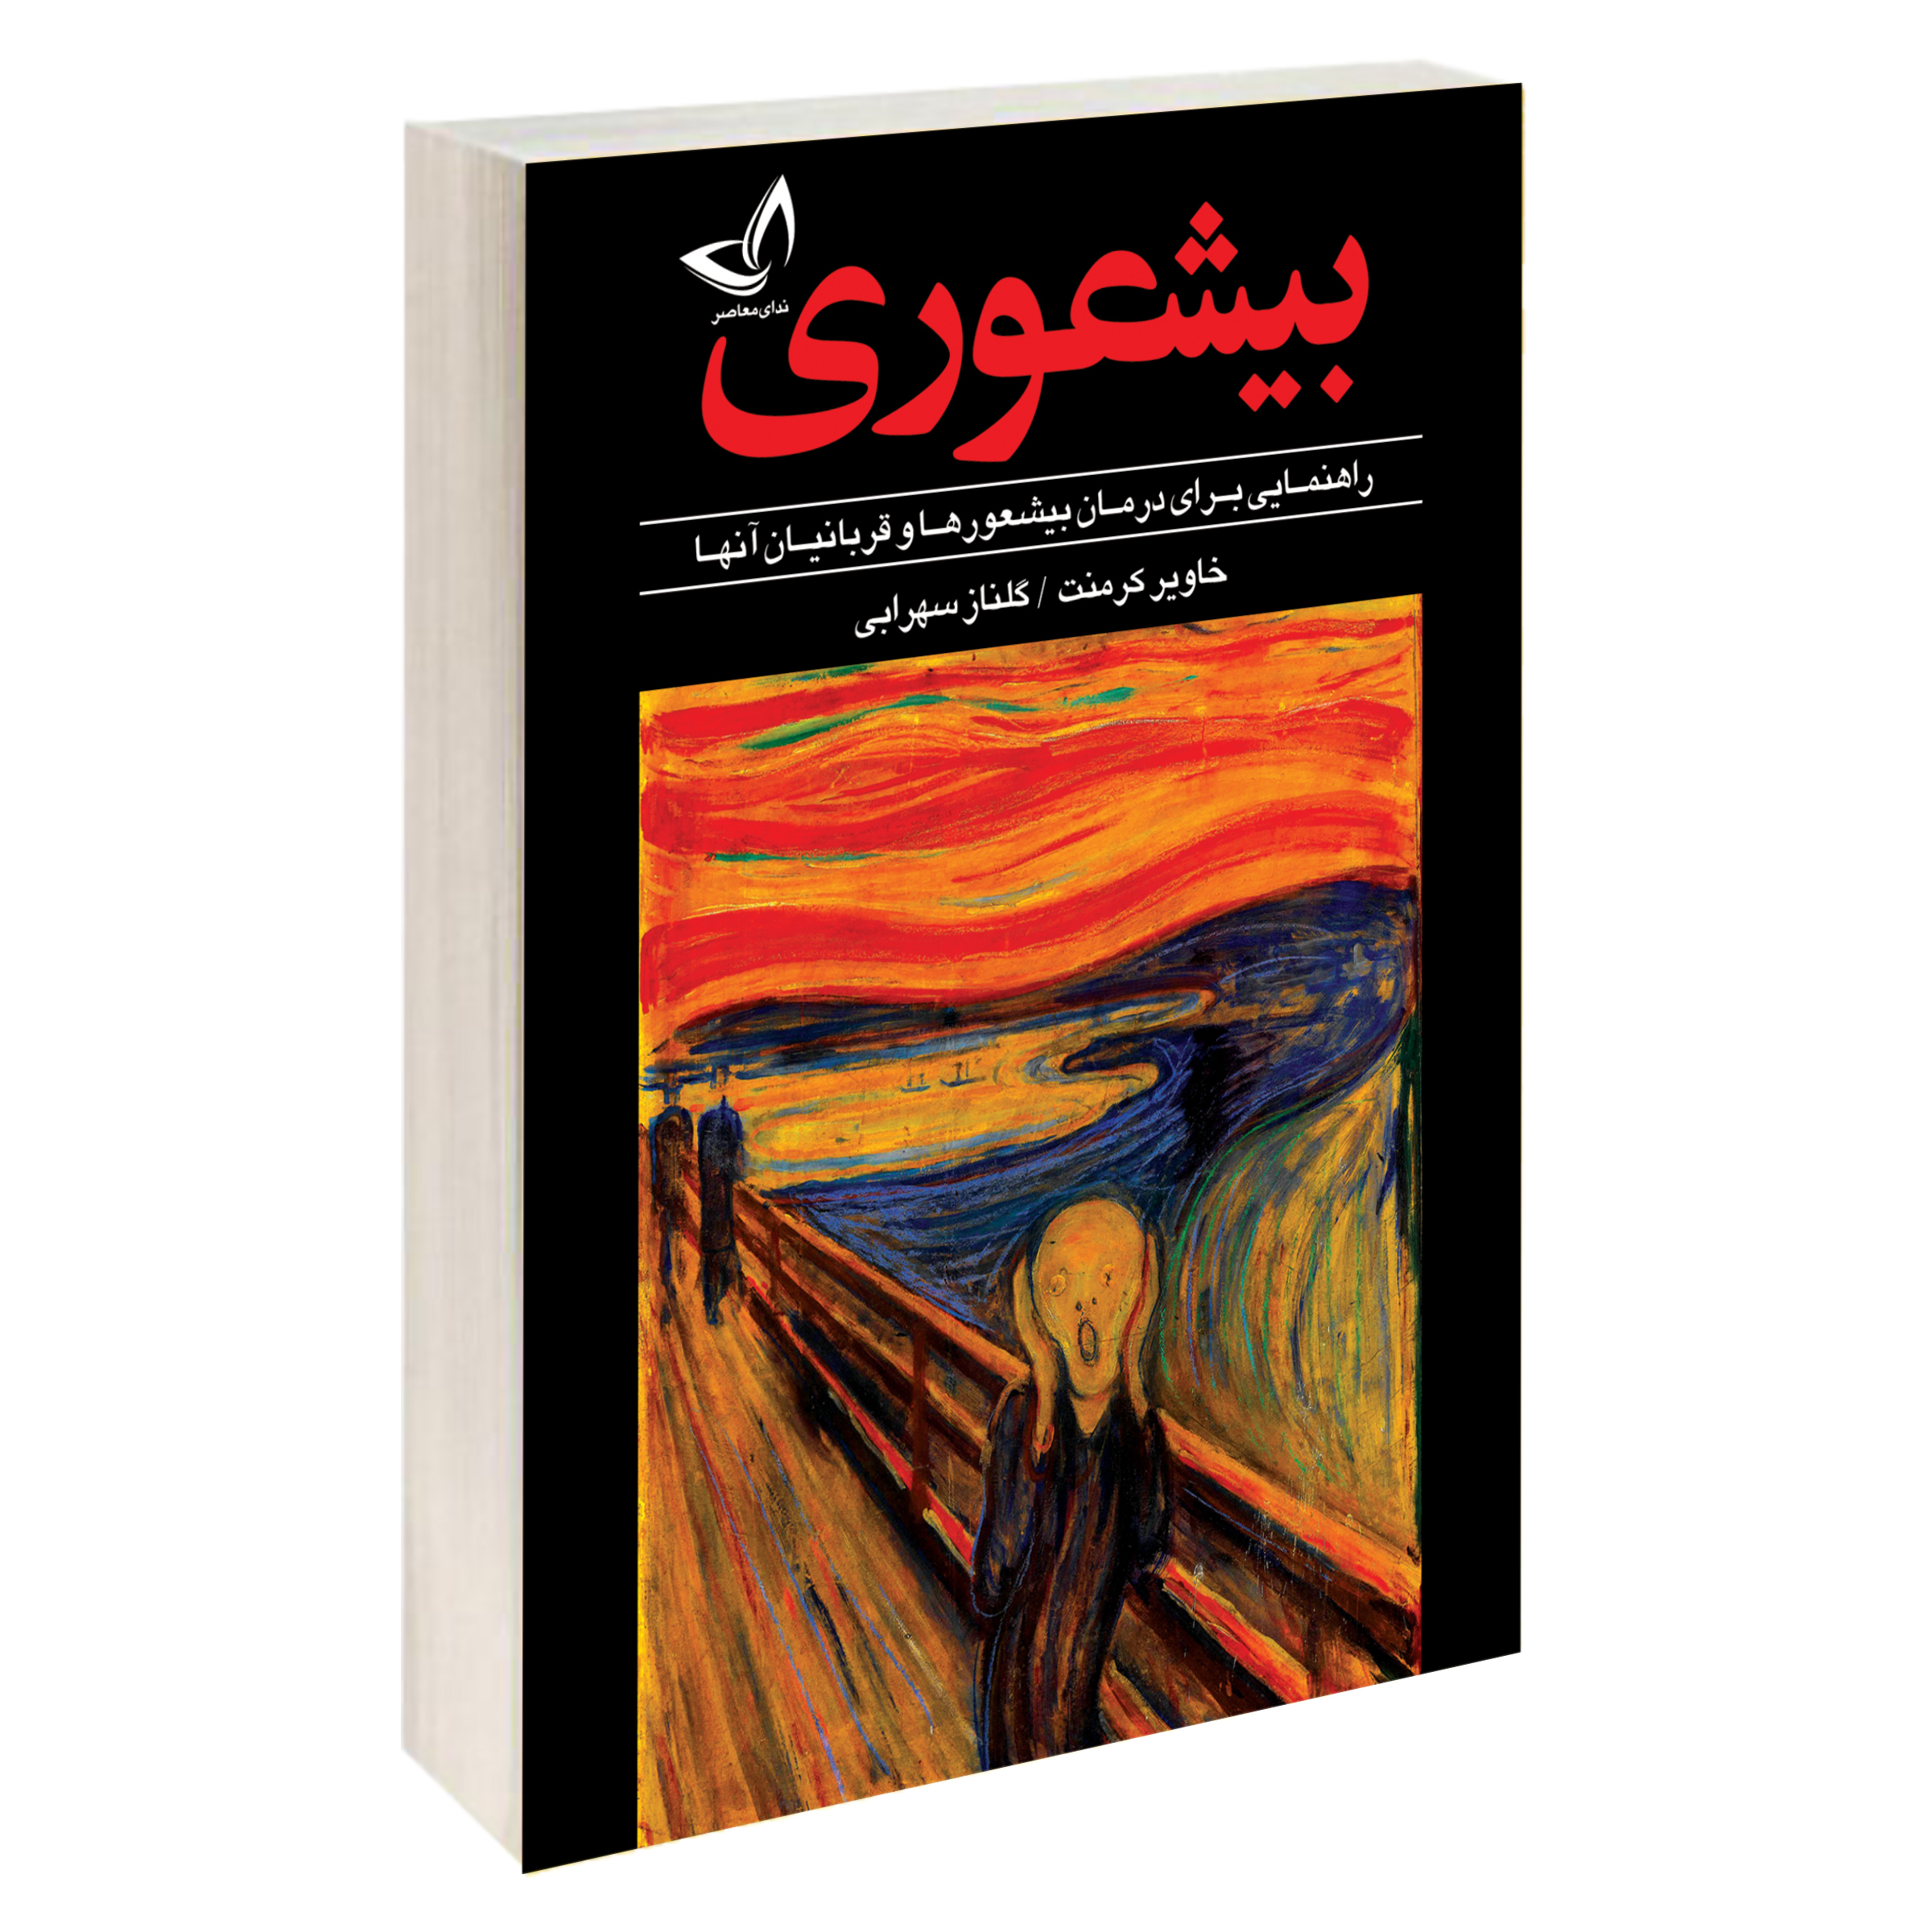 آنباکس کتاب بیشعوری اثر خاویر کرمنت نشر ندای معاصر توسط تینا شفقتی در تاریخ ۰۹ آبان ۱۳۹۹